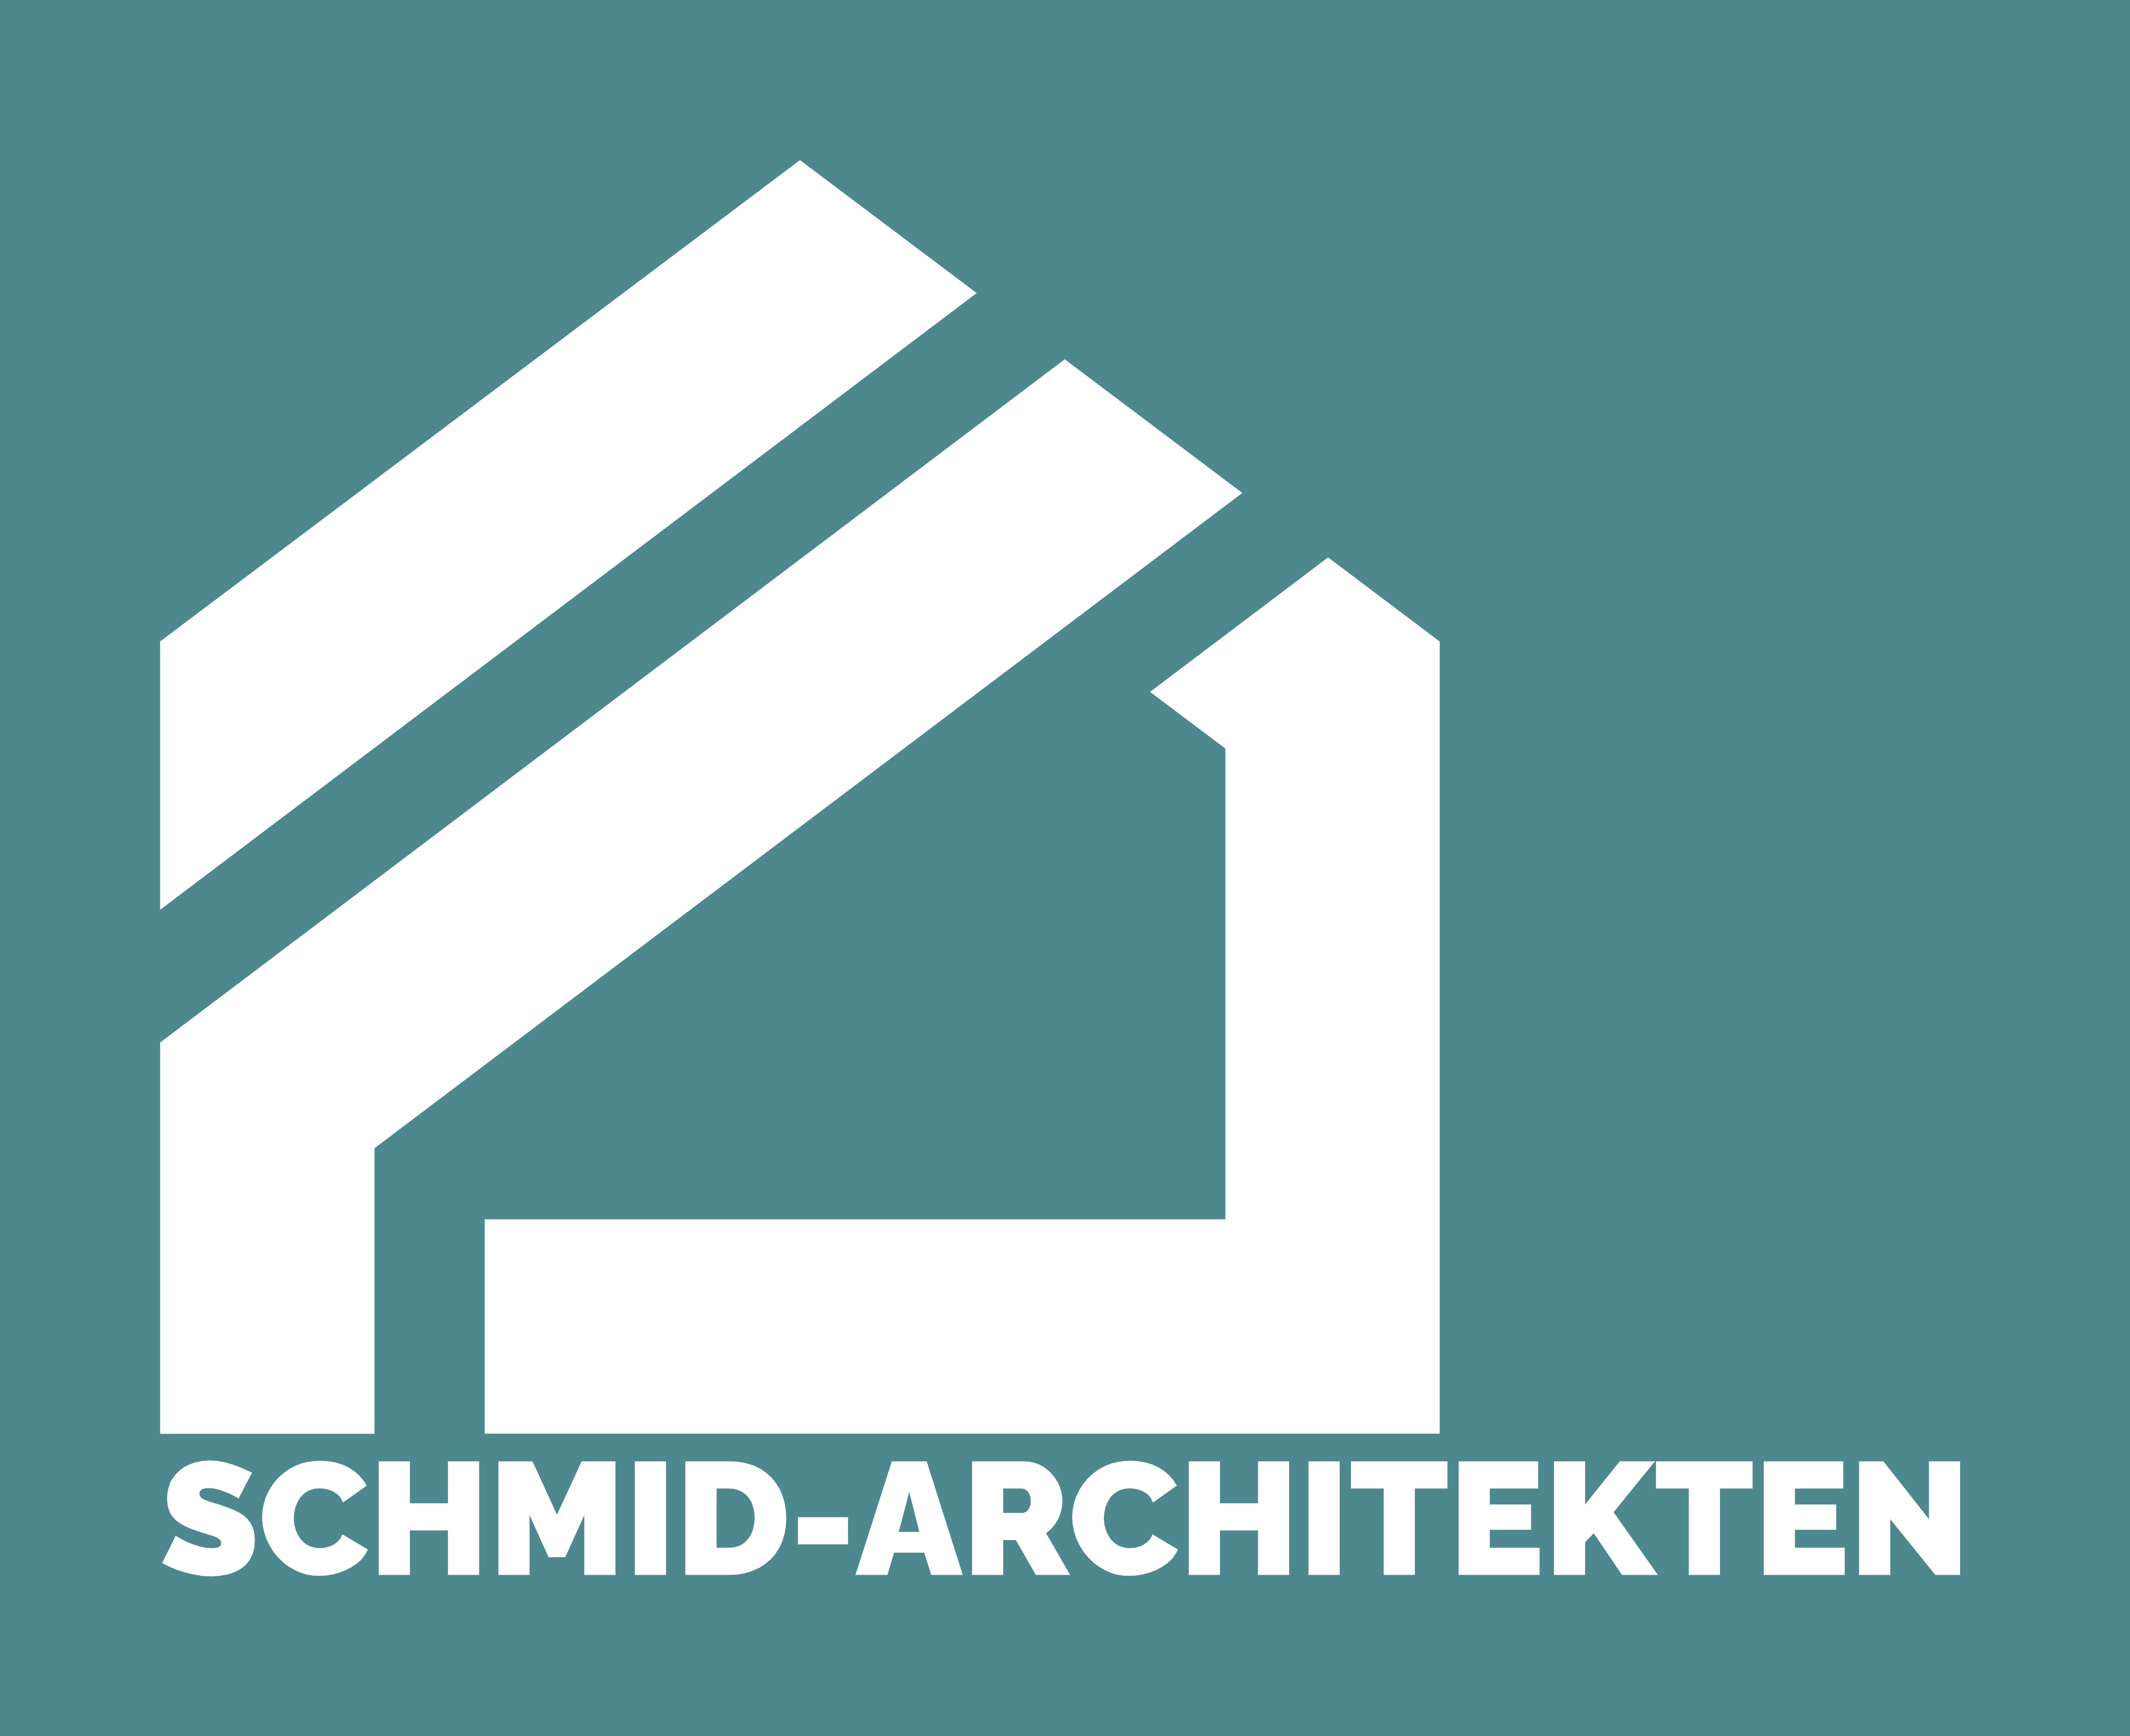 Schmid-Architekten Logo